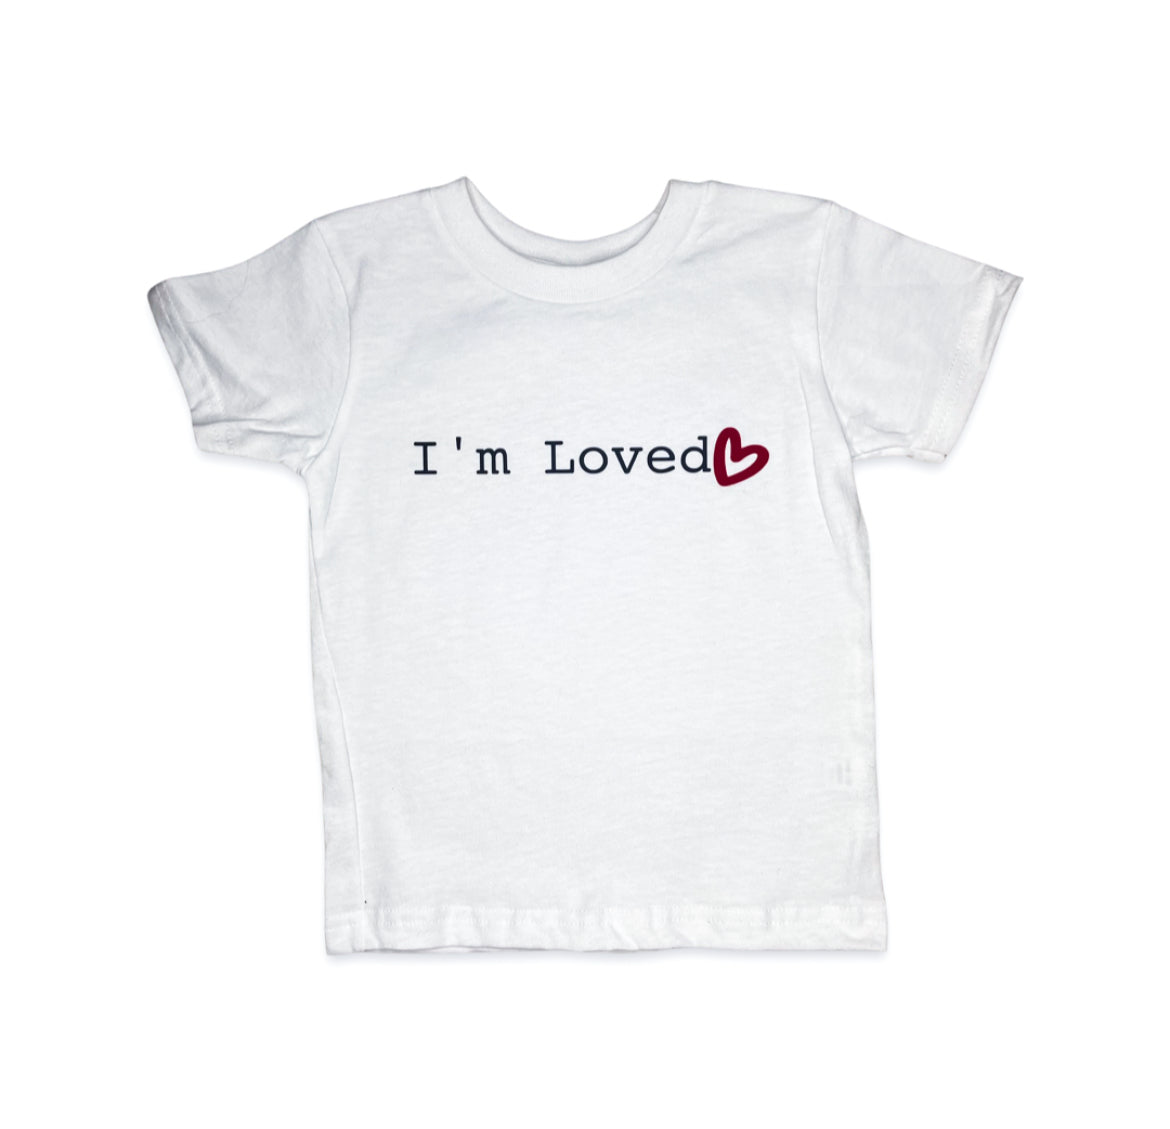 I’m Loved - Kids White T-shirt